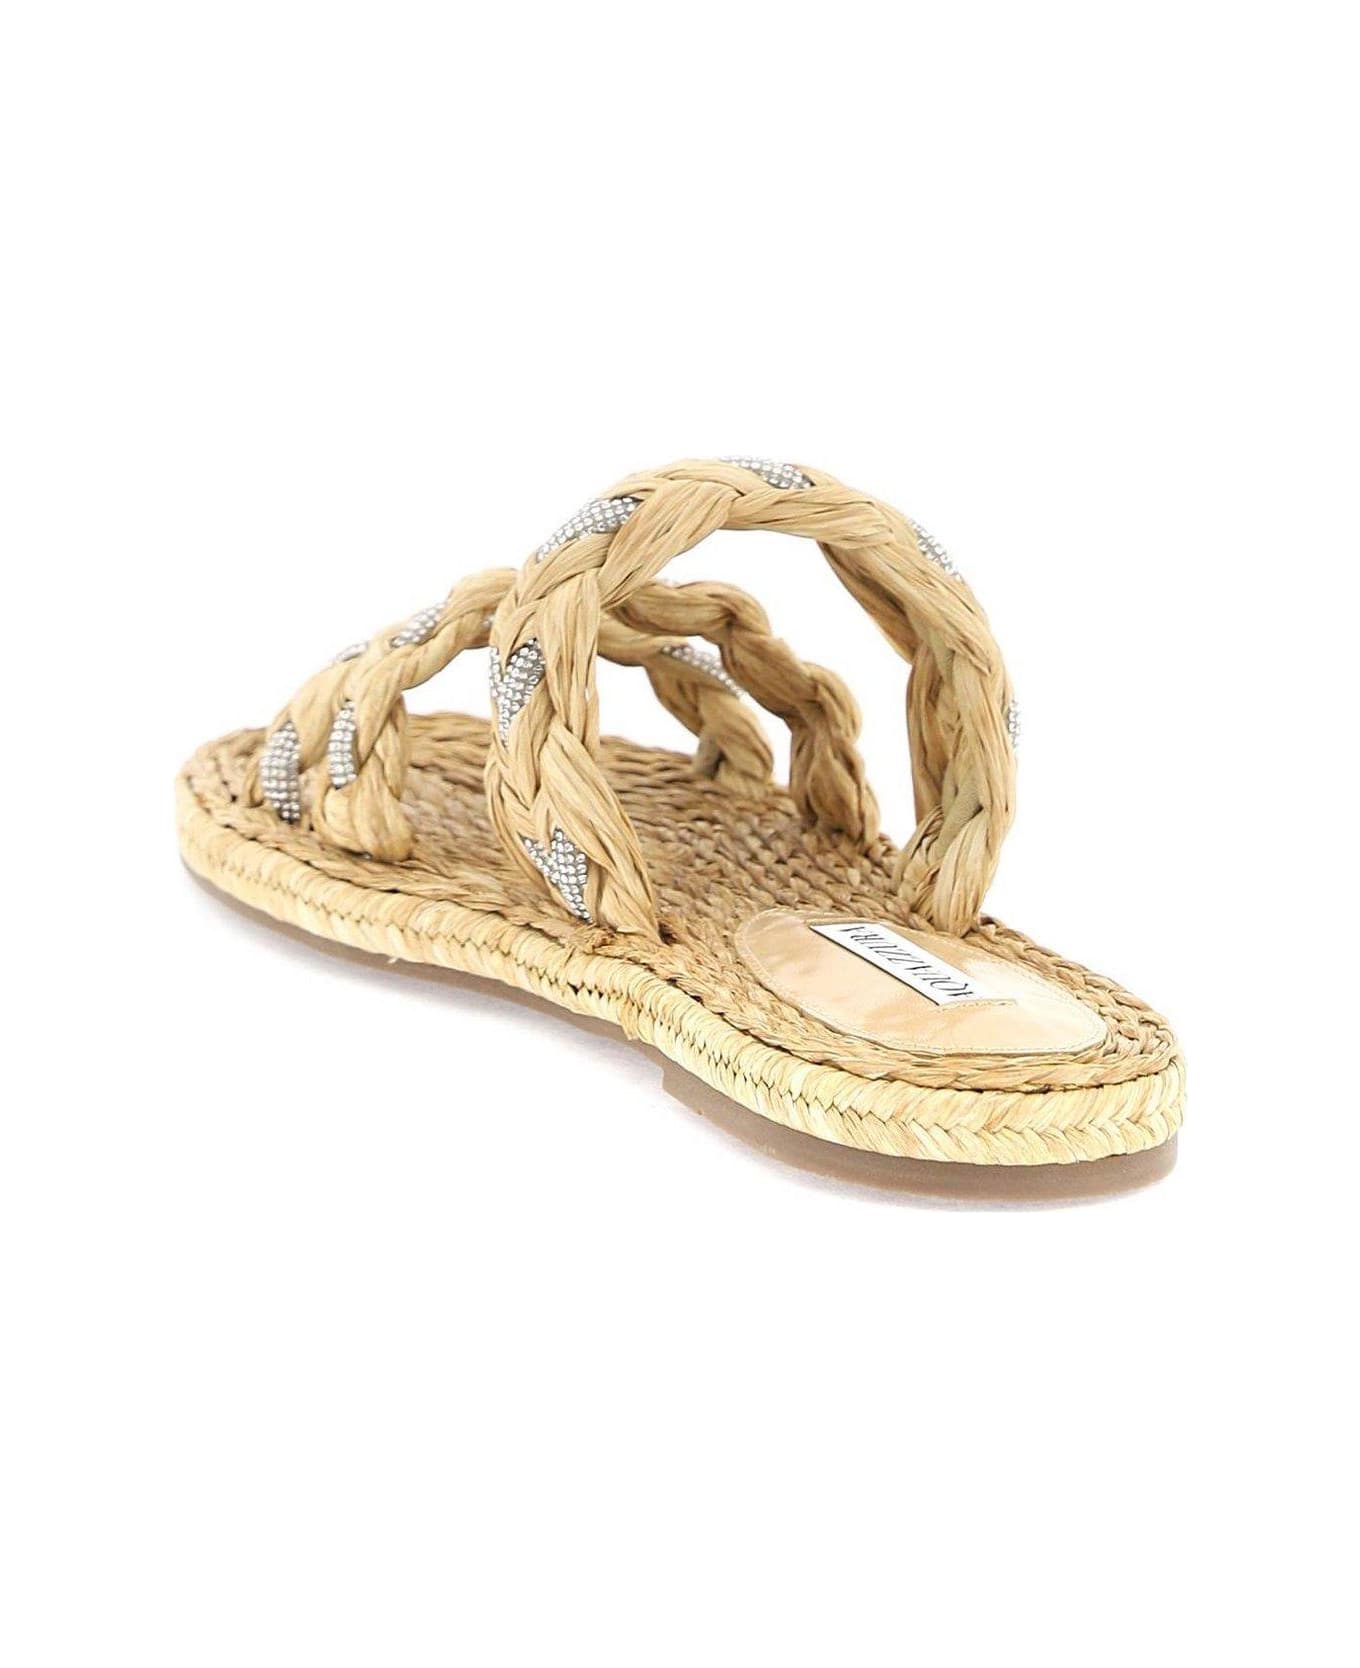 Aquazzura Embellished Slip-on Sandals - Neutro サンダル